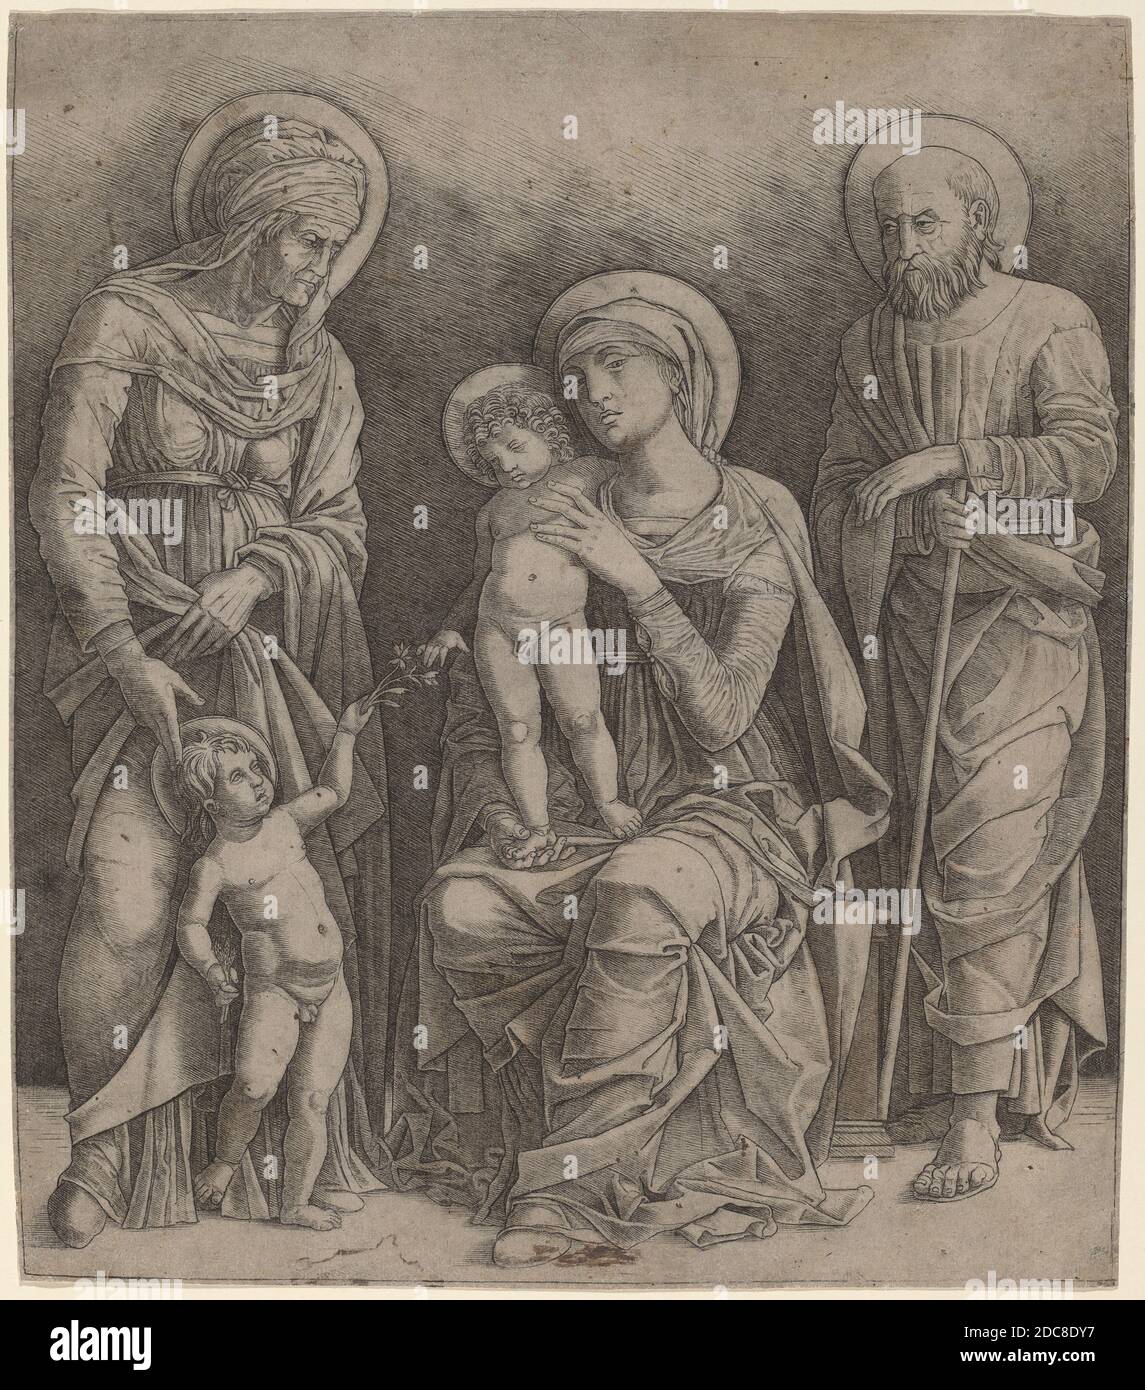 Giovanni Antonio da Brescia, (artiste), italien, actif c. 1490 - 1525 ou après, Andrea Mantegna, (artiste après), Paduan, c. 1431 - 1506, Sainte famille avec Saint Elizabeth et le bébé Saint John, c. 1495/1505, gravure sur papier à poser, feuille: 30.2 x 26.1 cm (11 7/8 x 10 1/4 po Banque D'Images